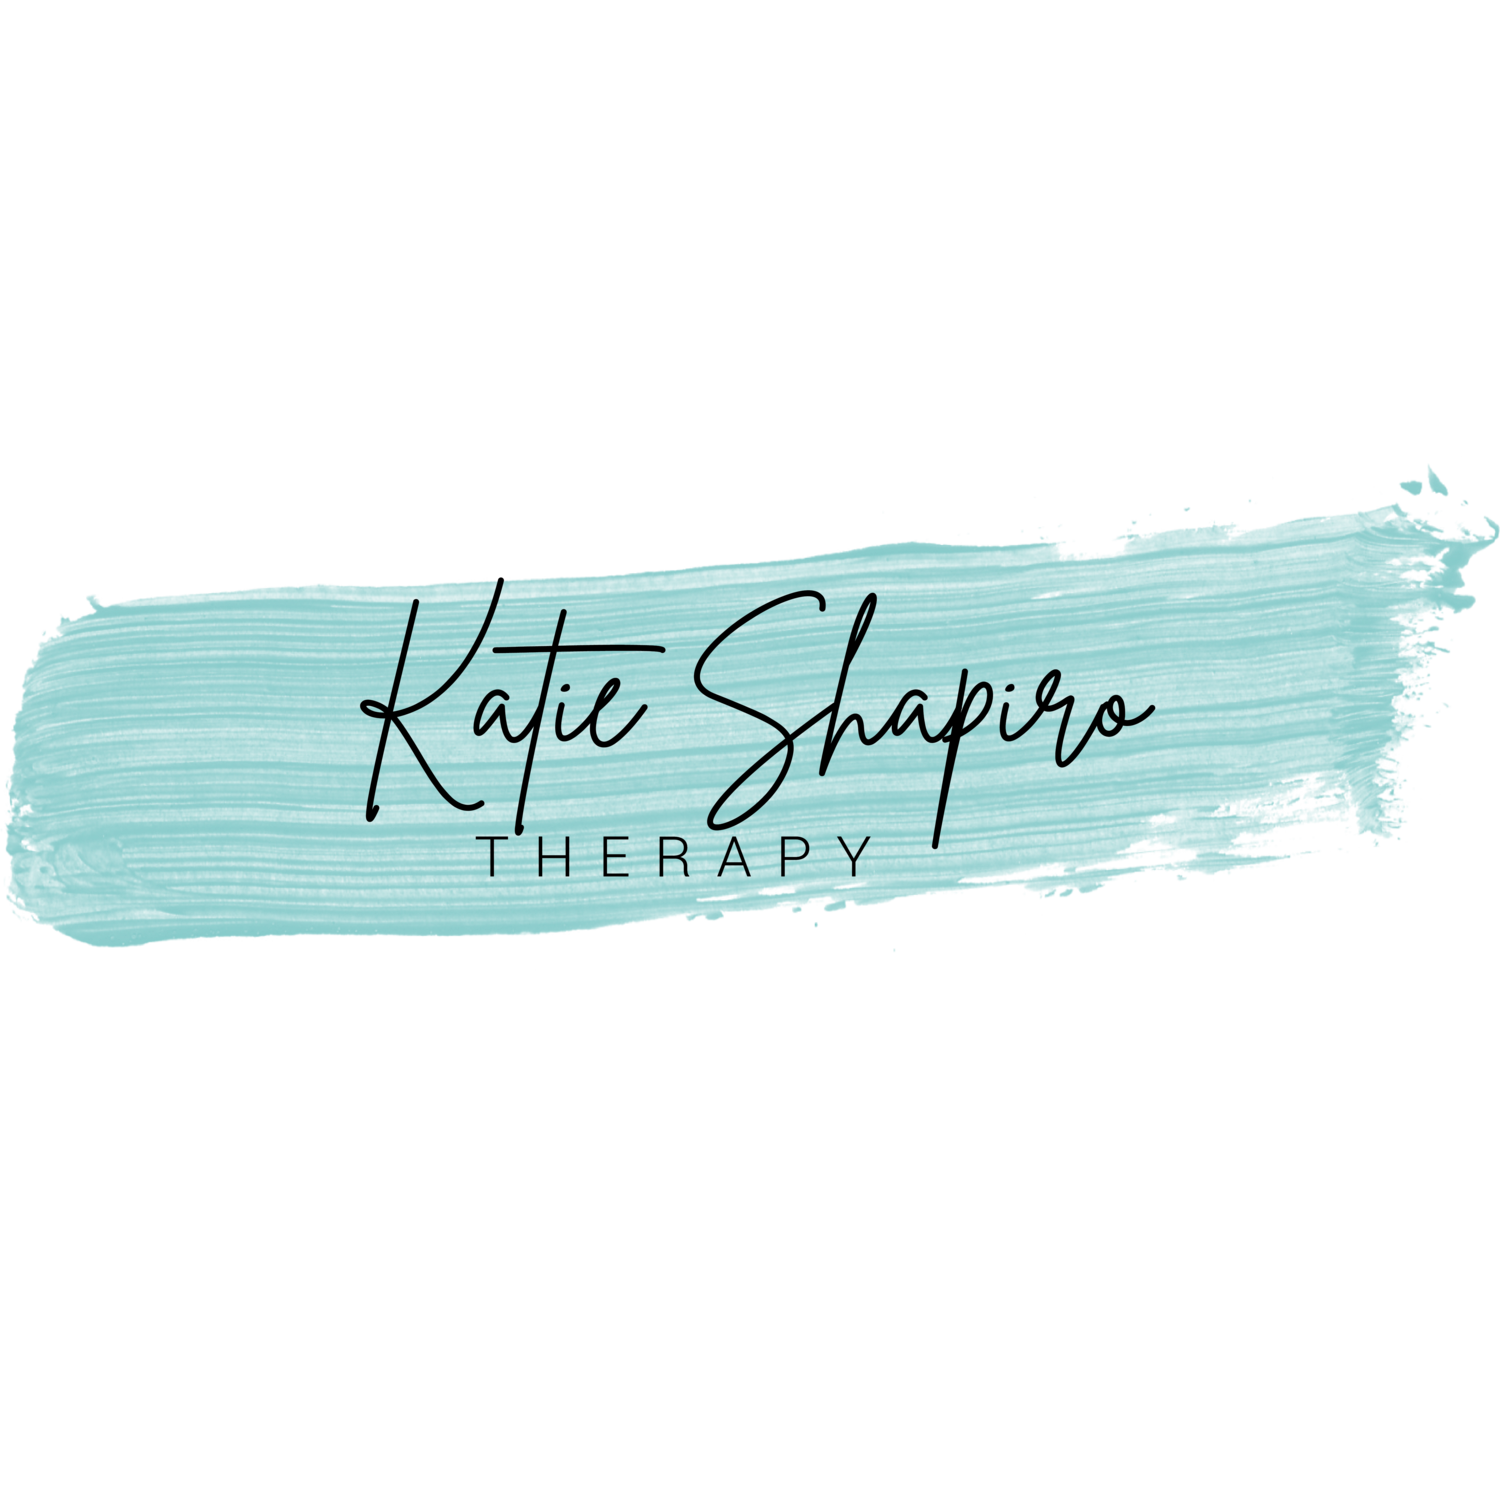 Katie Shapiro